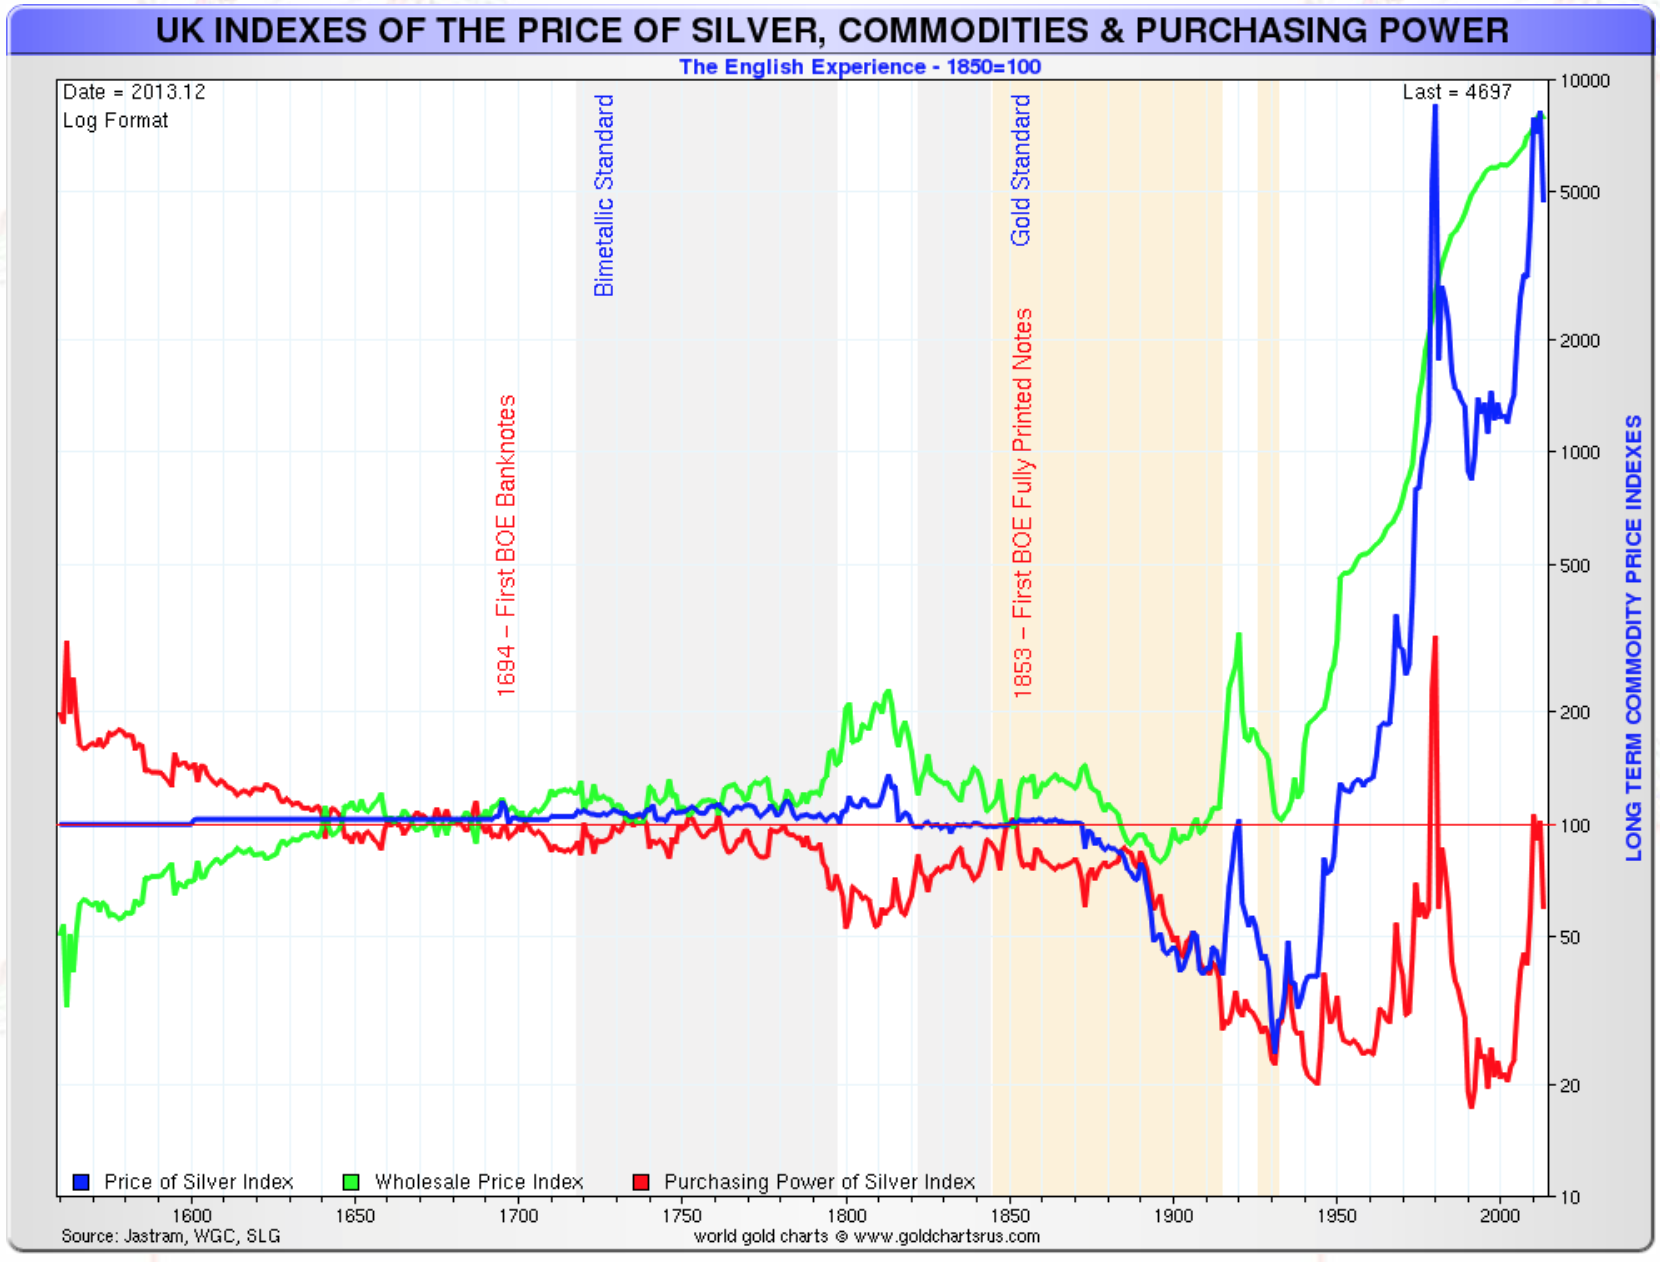 Prix bnominal/b de l'argent, l'inflation au Royaume-Uni et prix rels de l'argent 1560-2015